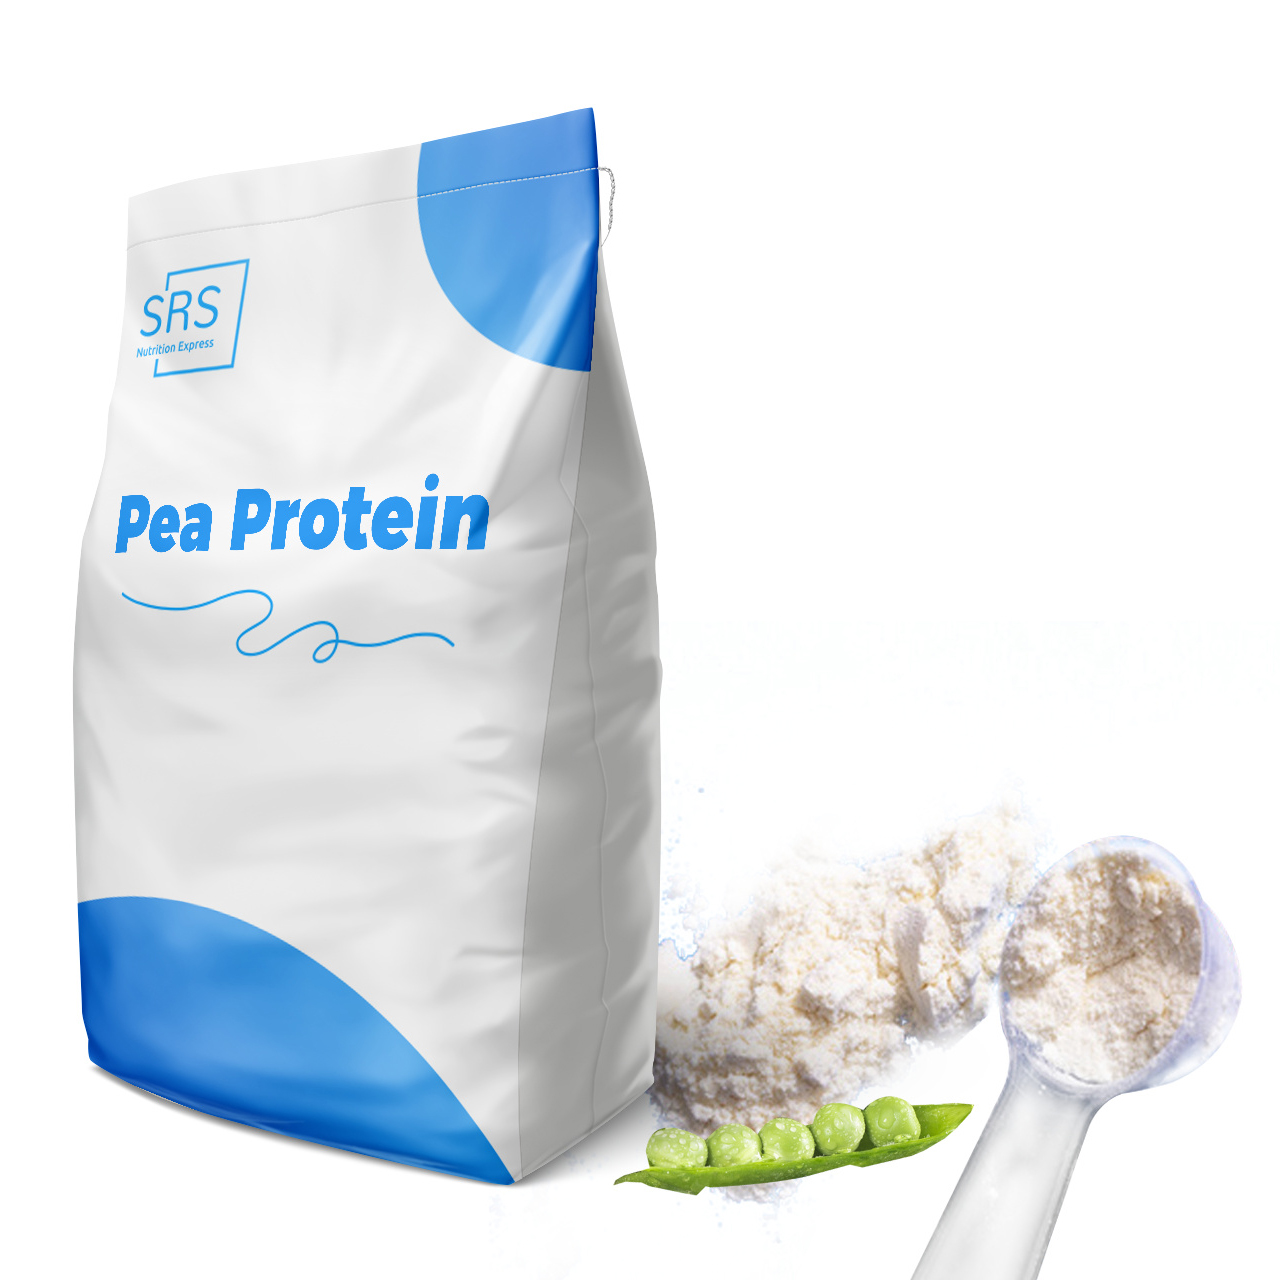 Proteína de guisante premium para soluciones de fitness y nutrición